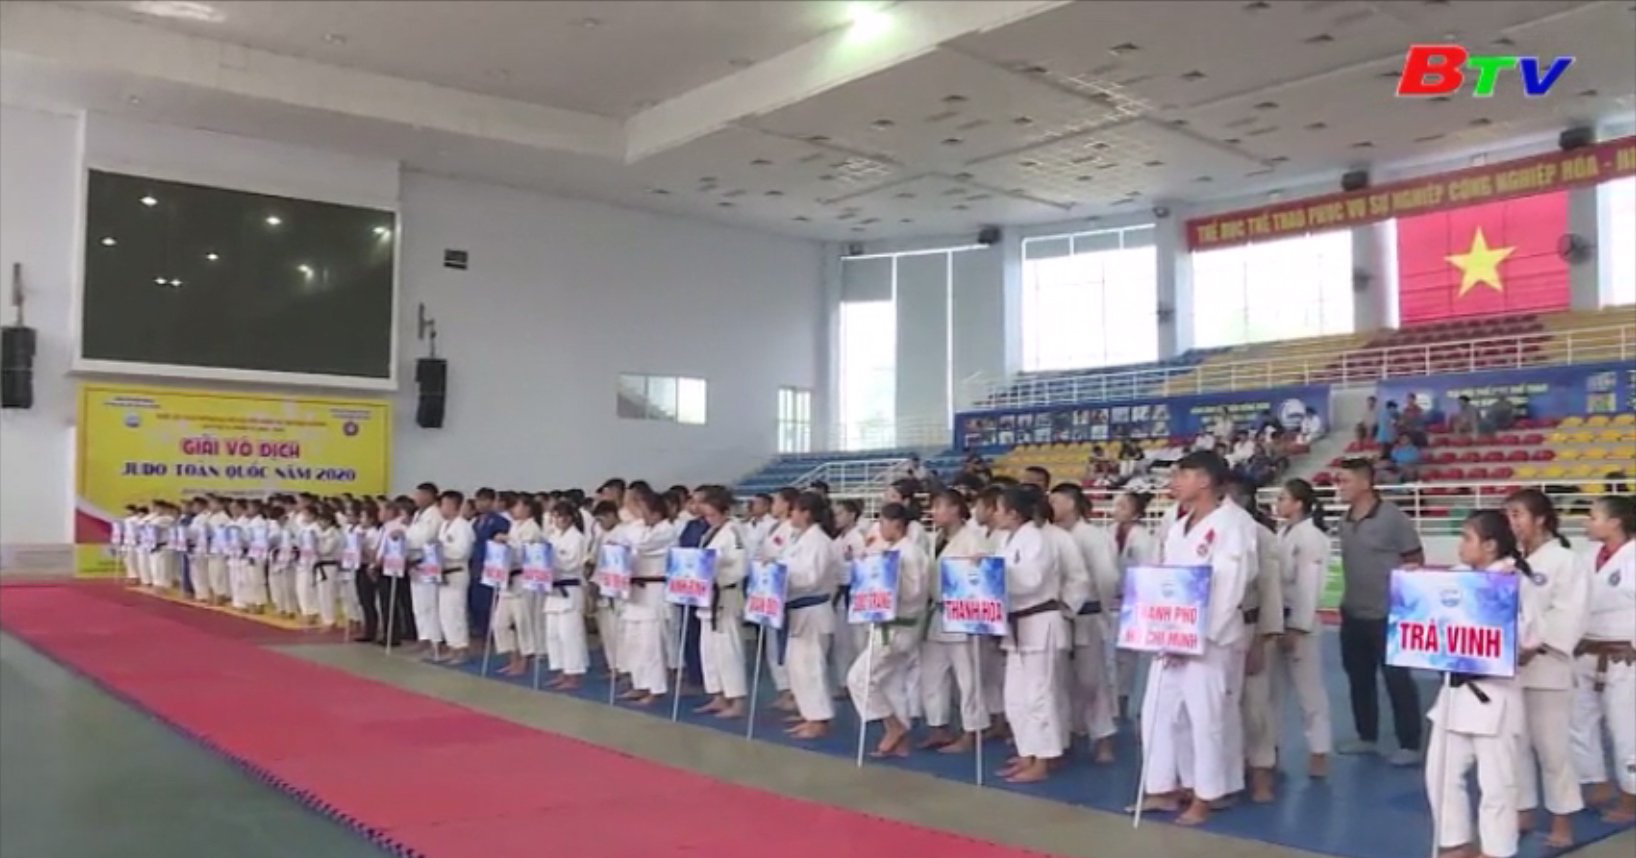 Giải vô địch Judo toàn quốc năm 2020 - Gần 200 vận động viên tham dự